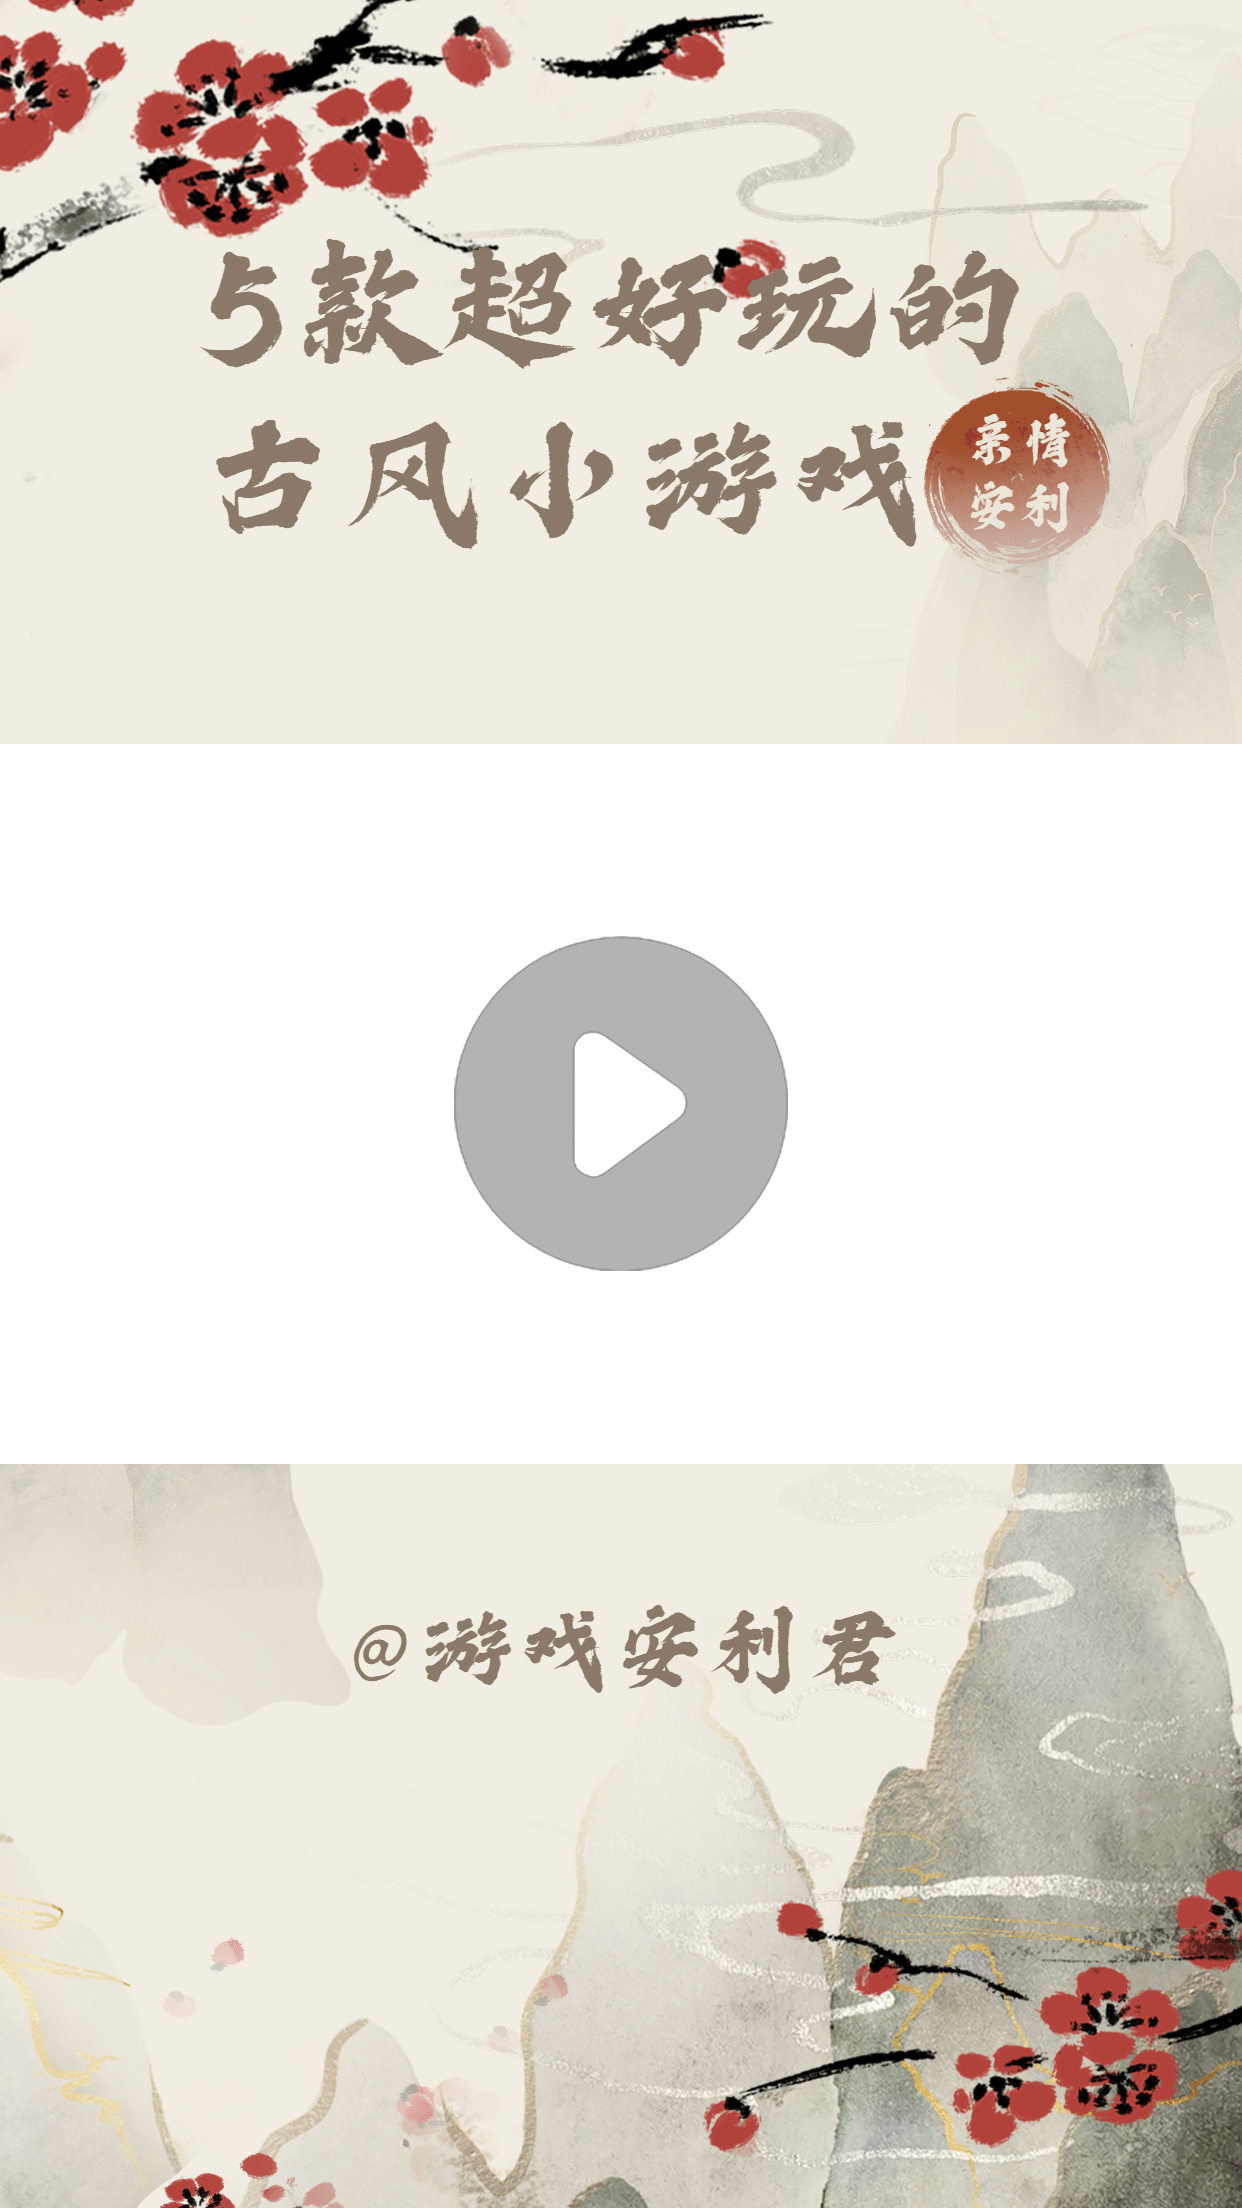 古风中国风水墨红梅视频边框背景